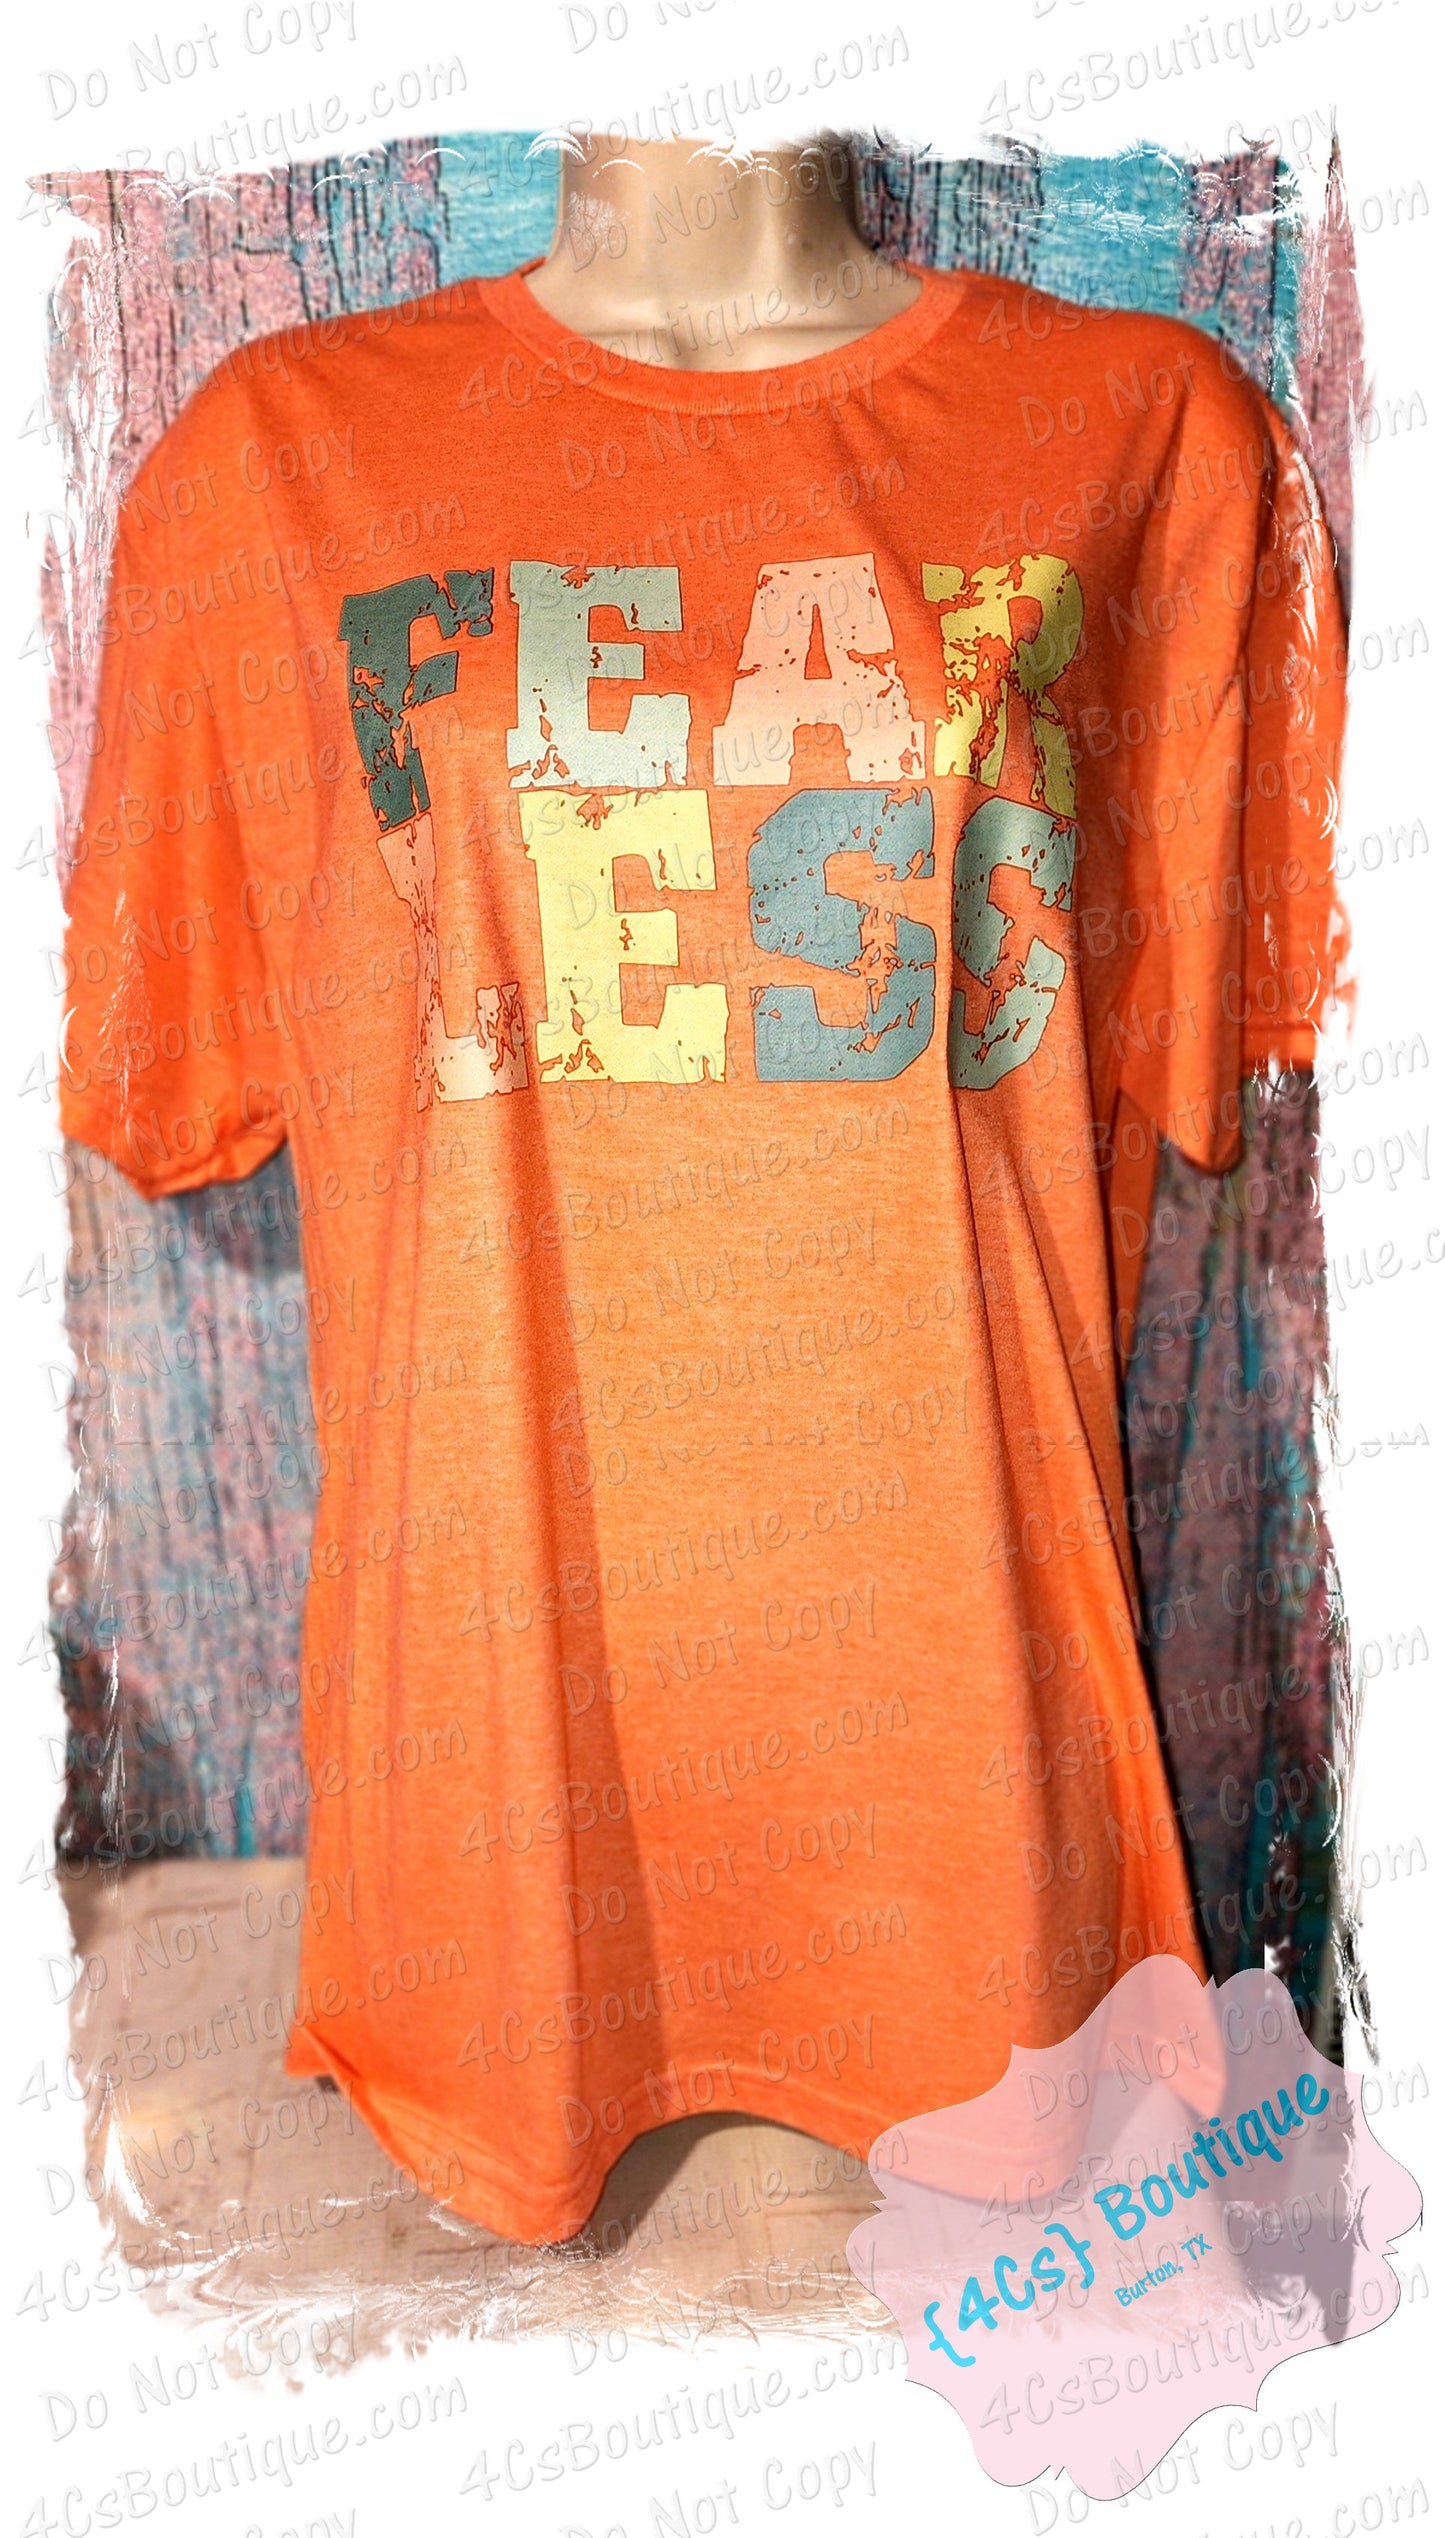 Fearless Shirt